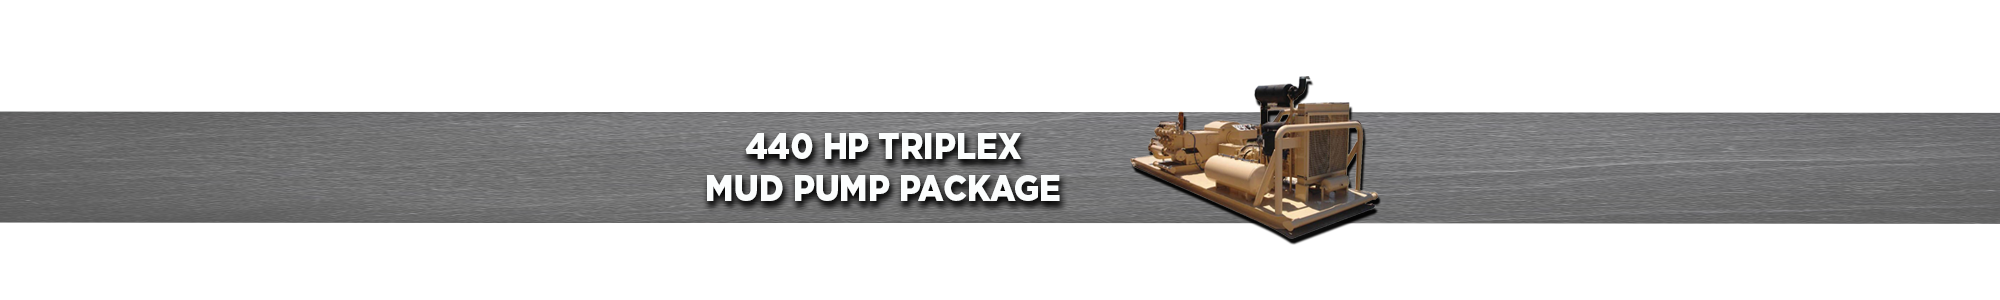 440 HP Triplex Mud Pump Package